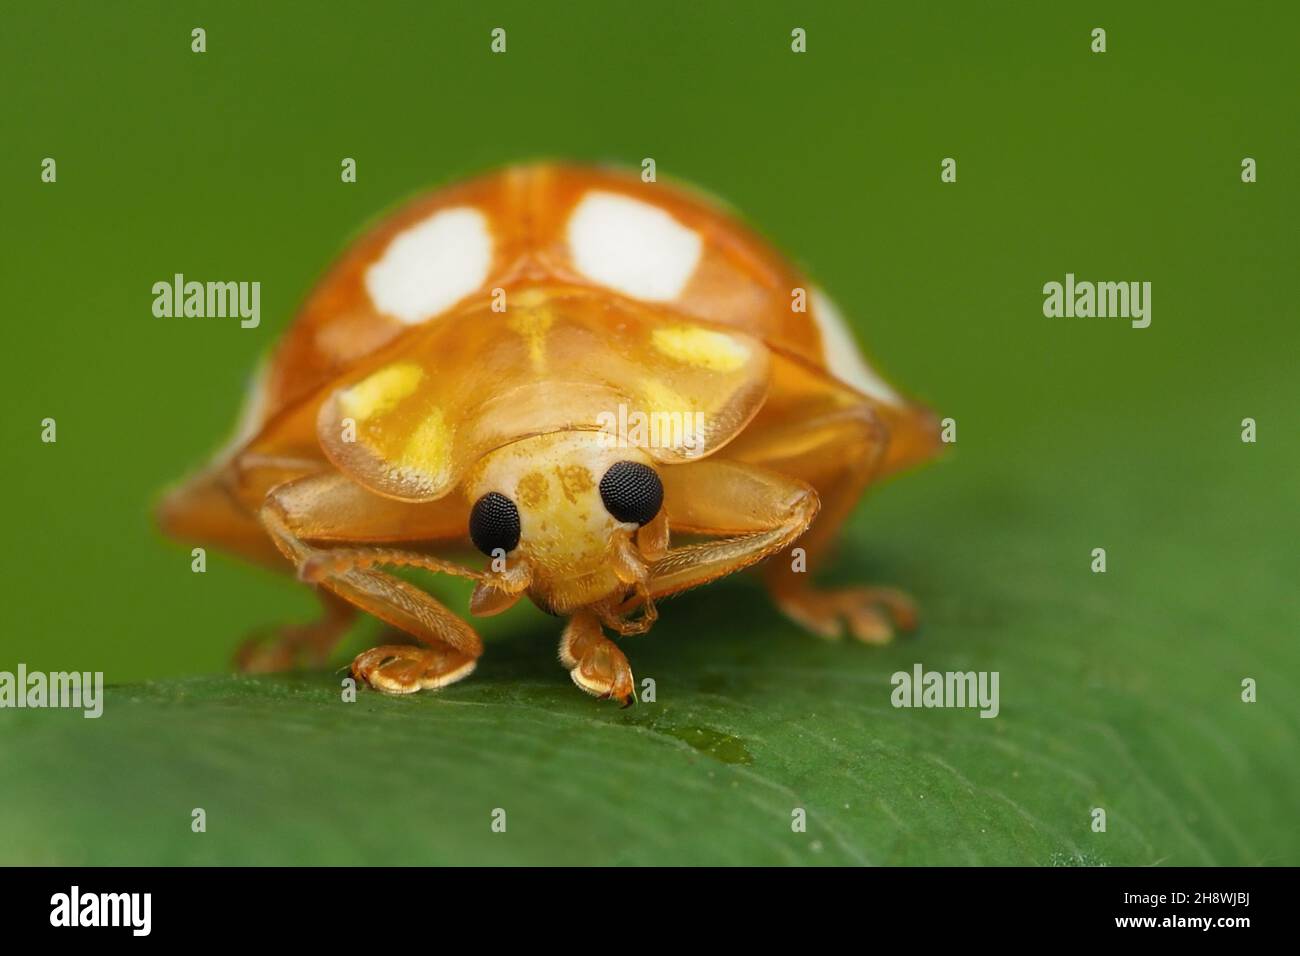 Frontansicht eines Orangen-Marienkäfer (Halyzia 16-guttata), der auf einem Blatt ruht. Tipperary, Irland Stockfoto